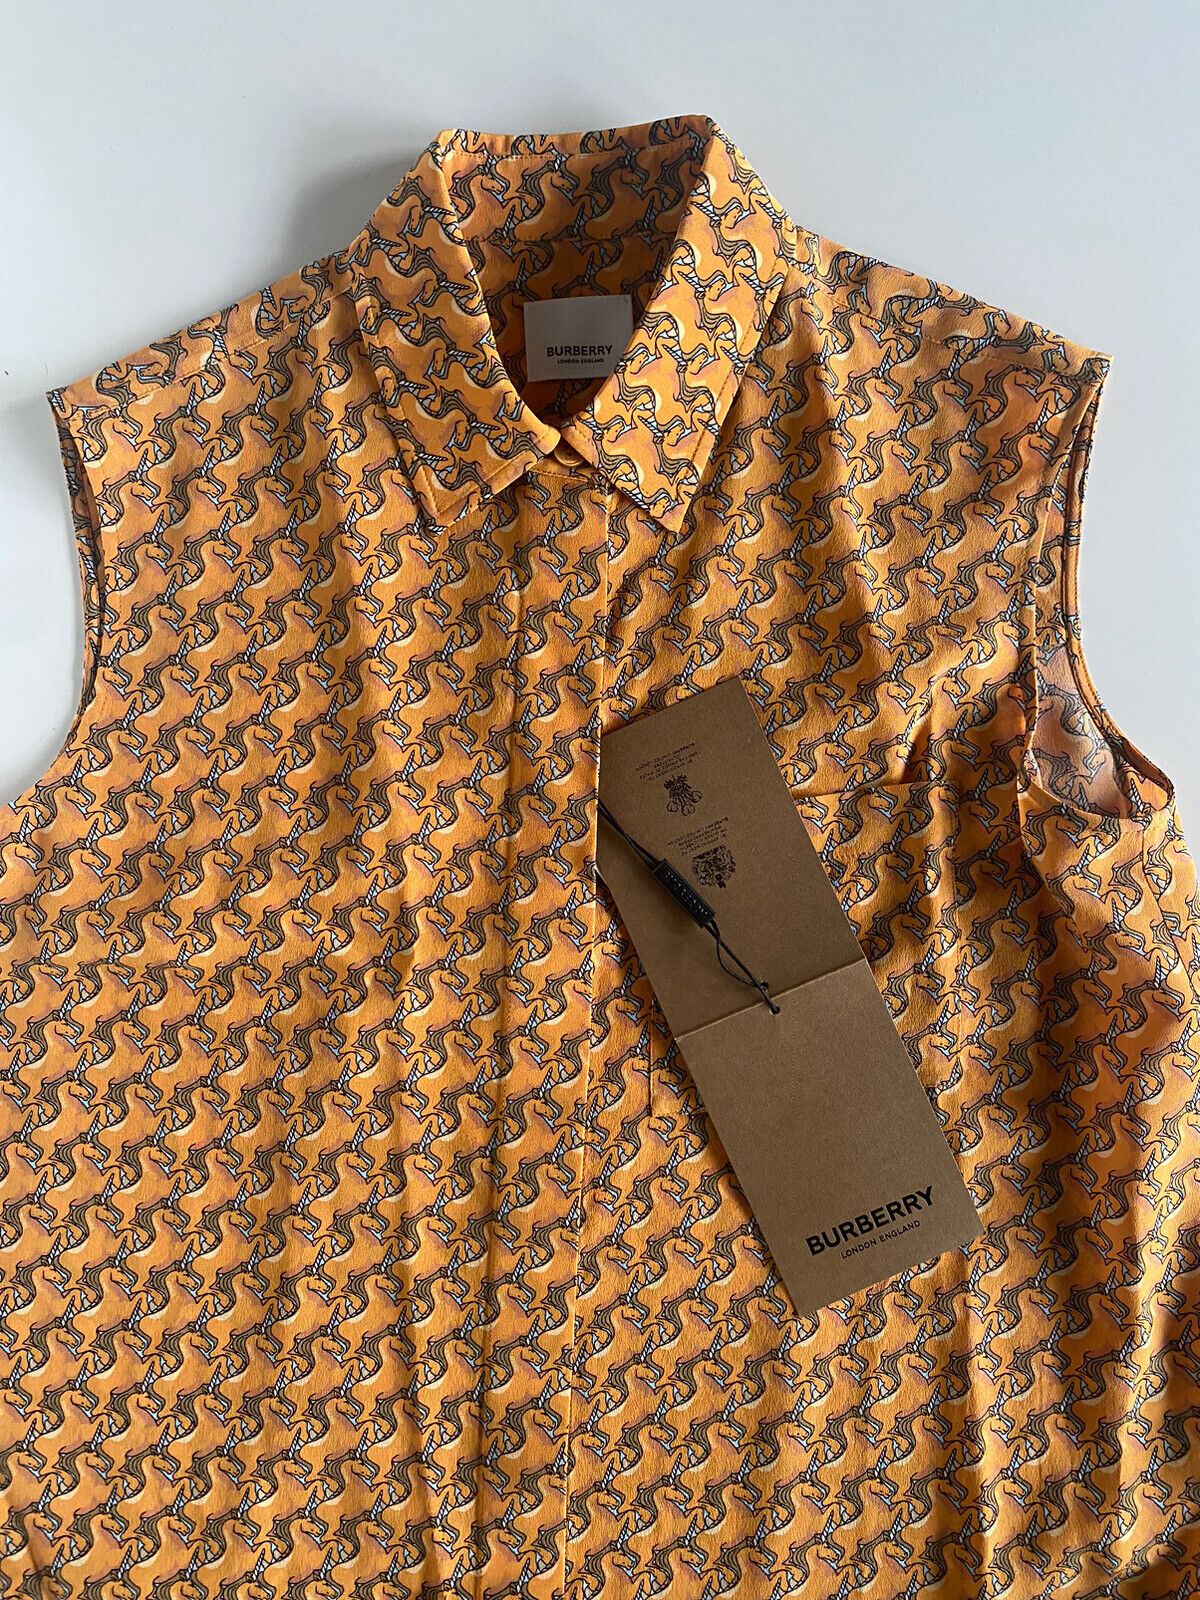 Женская рубашка на пуговицах яркого цвета дыни Burberry стоимостью 890 долларов NWT 4 США (6 Великобритания) 80324481